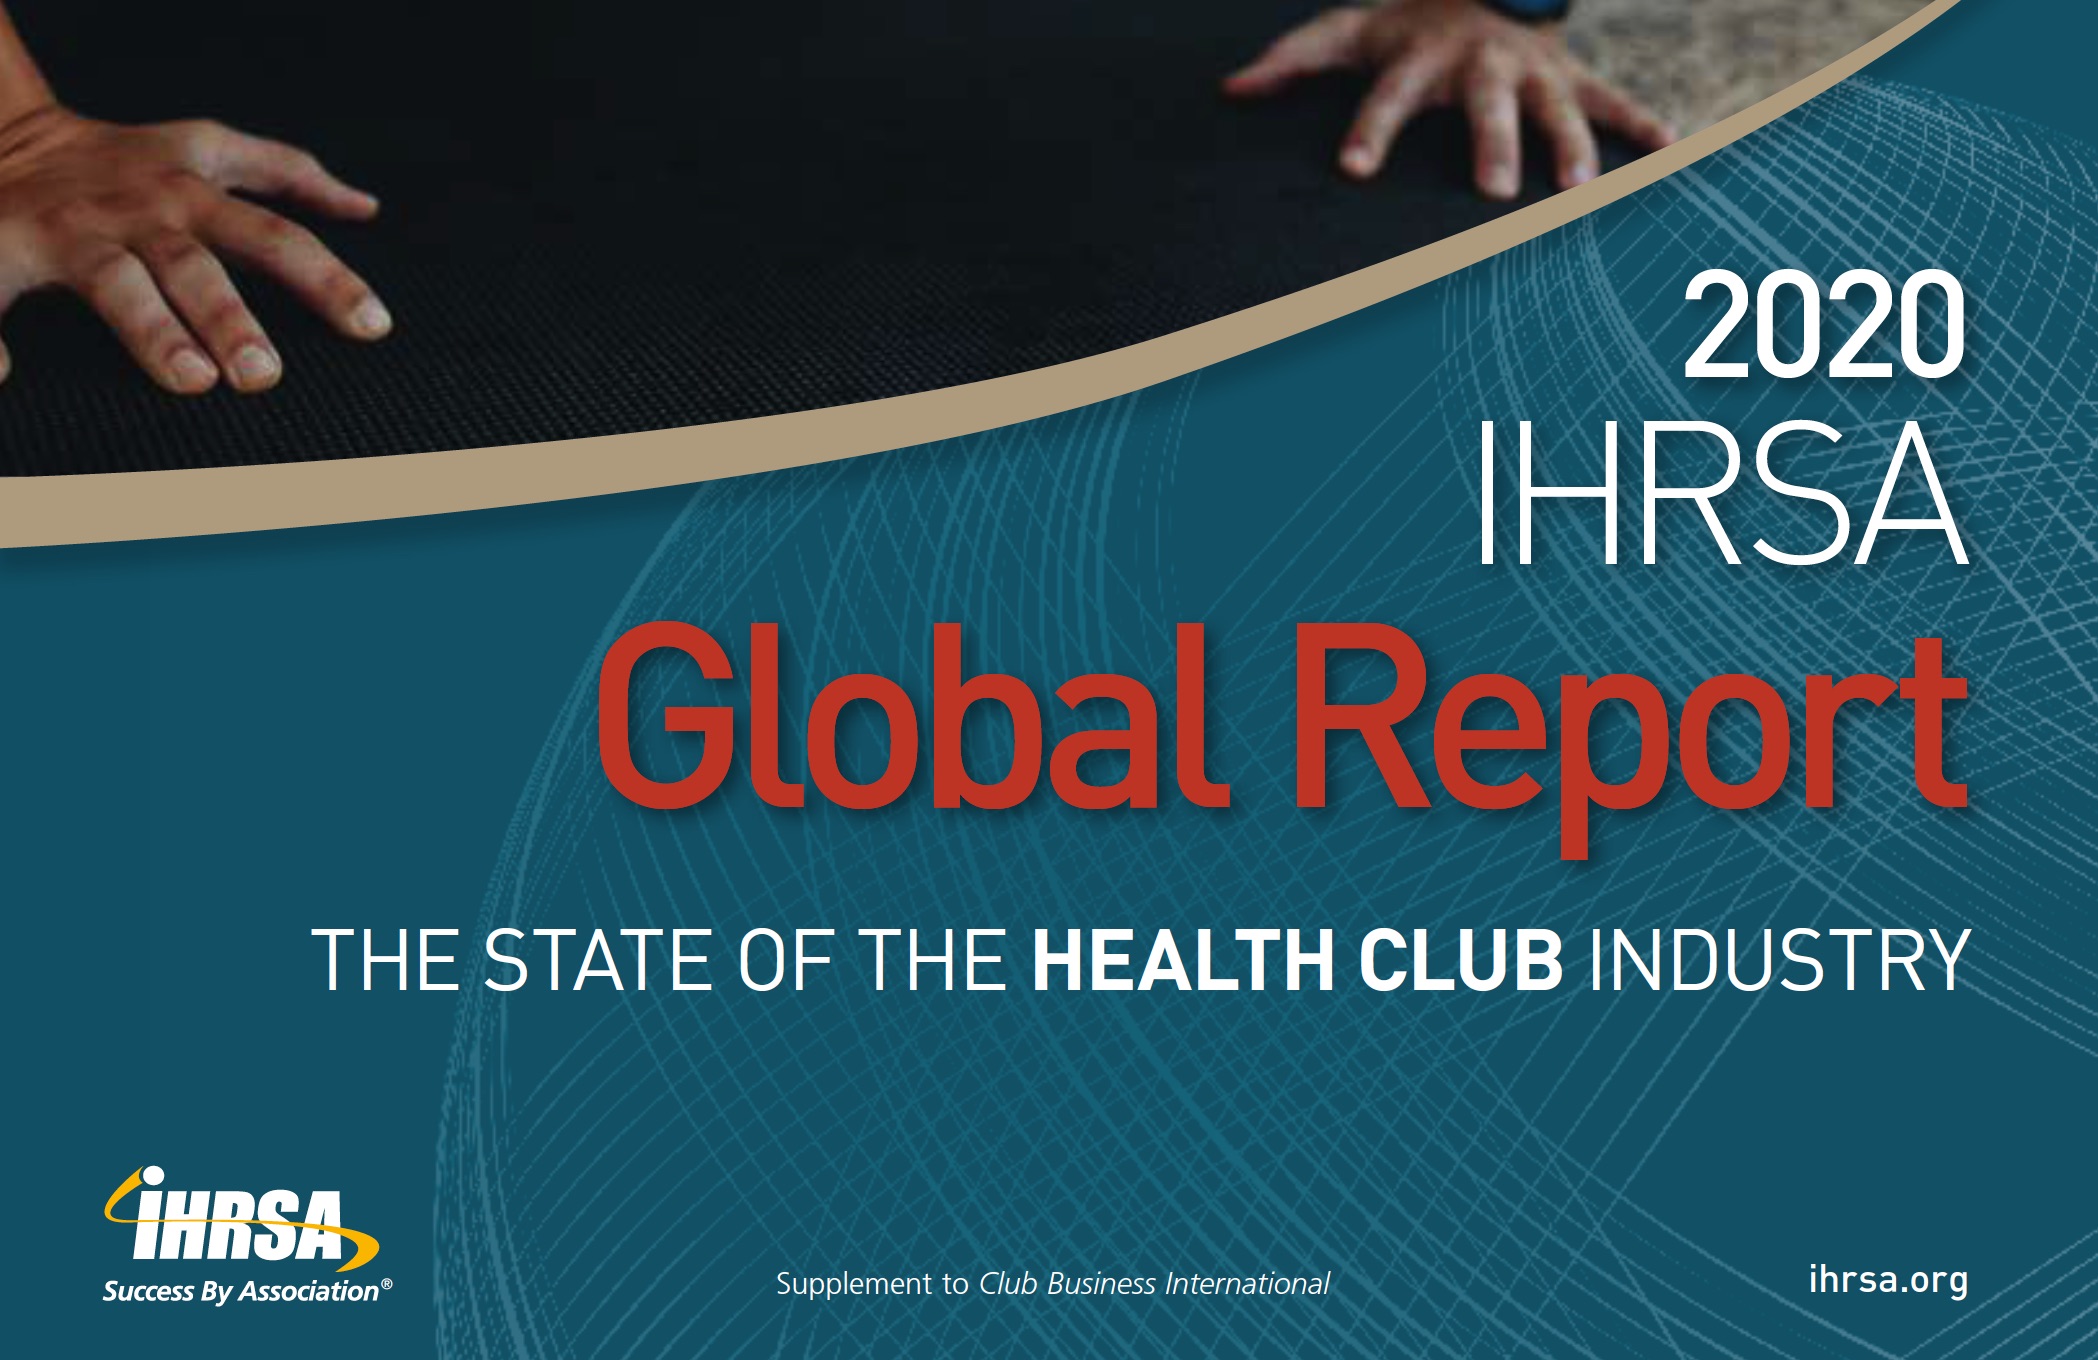 O mercado fitness no Brasil segundo o Report Global IHRSA 2020